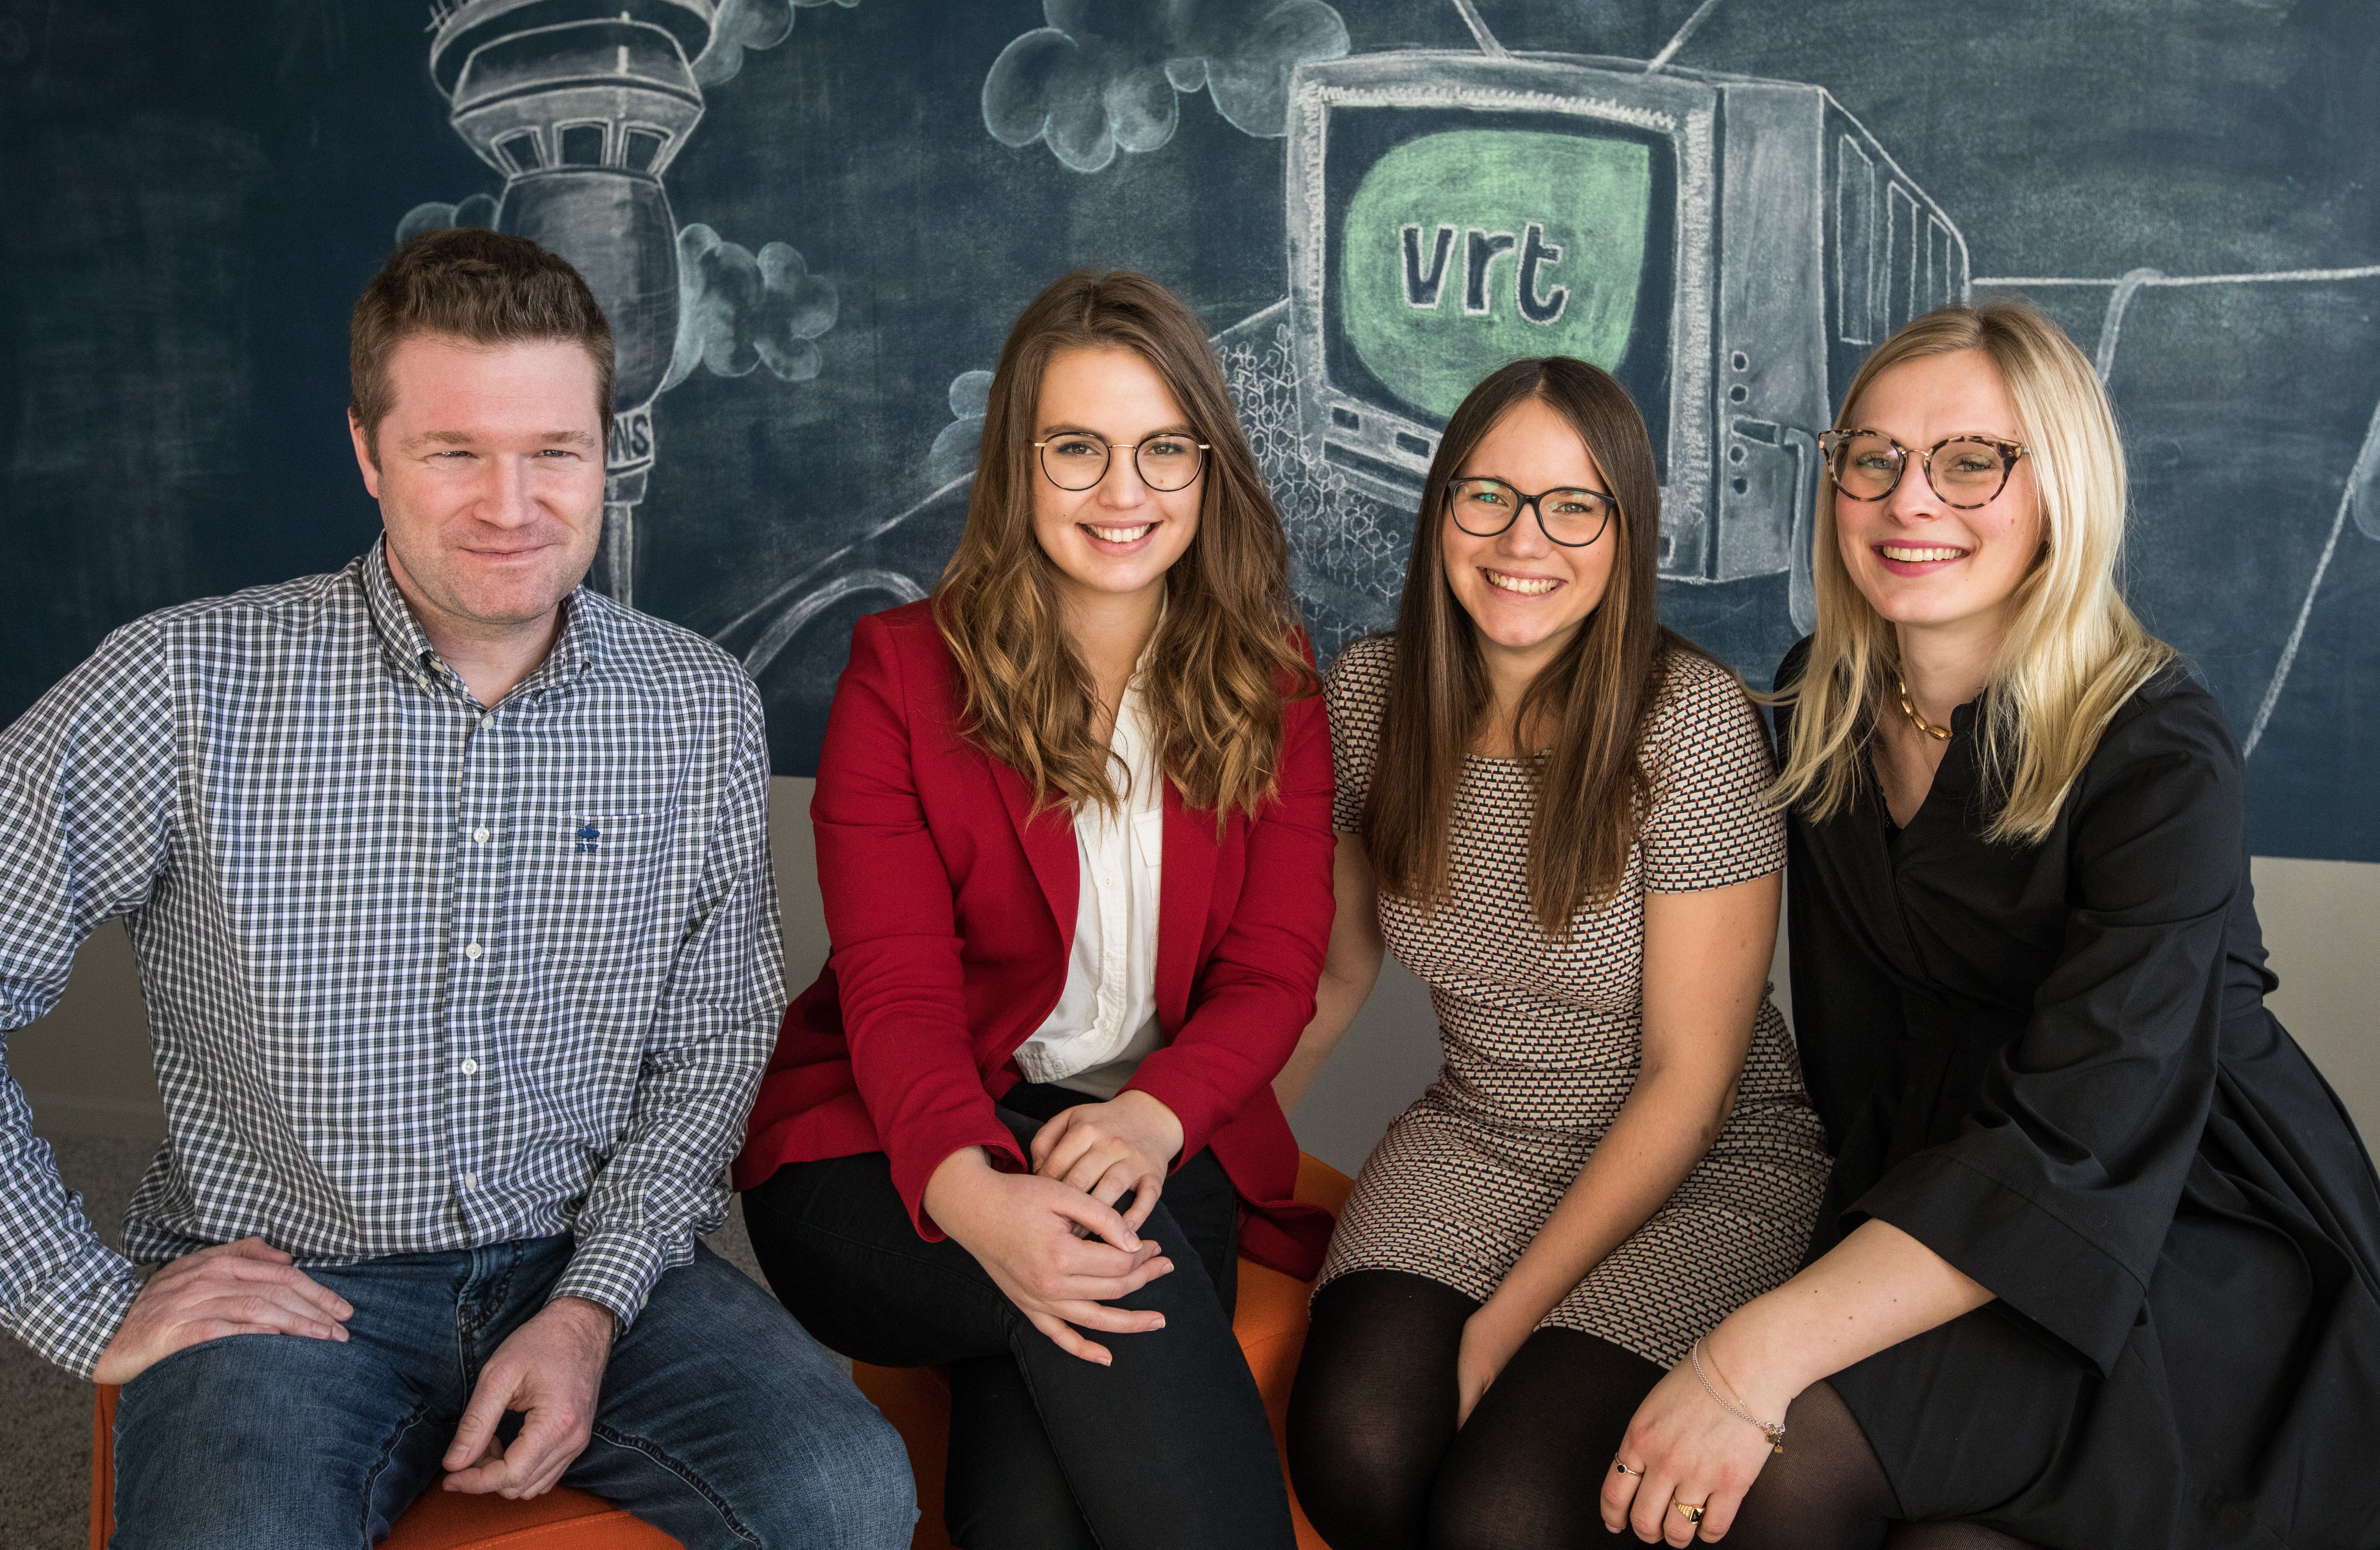 Het team van de VRT klantendienst (vlnr) Bart, Ine, Kato en Anabel (c) VRT